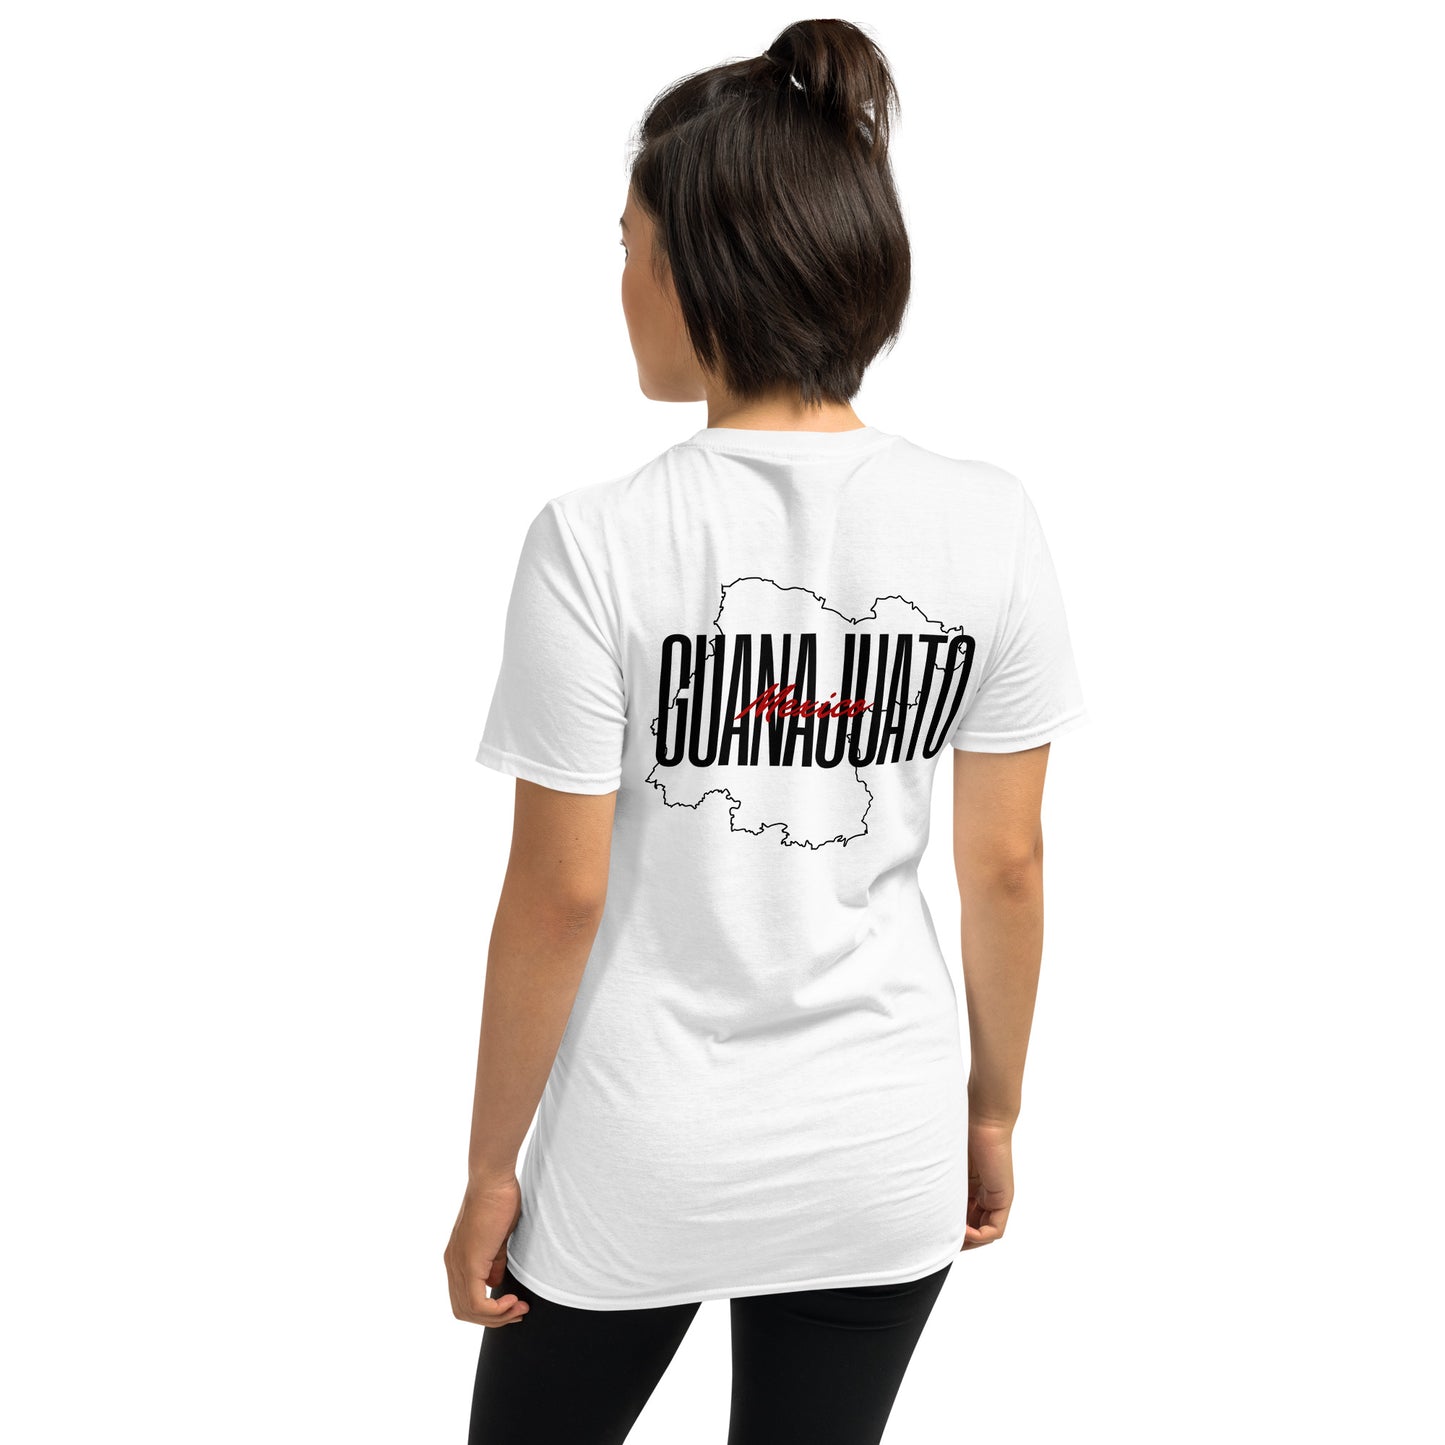 Guanajuato T-Shirt